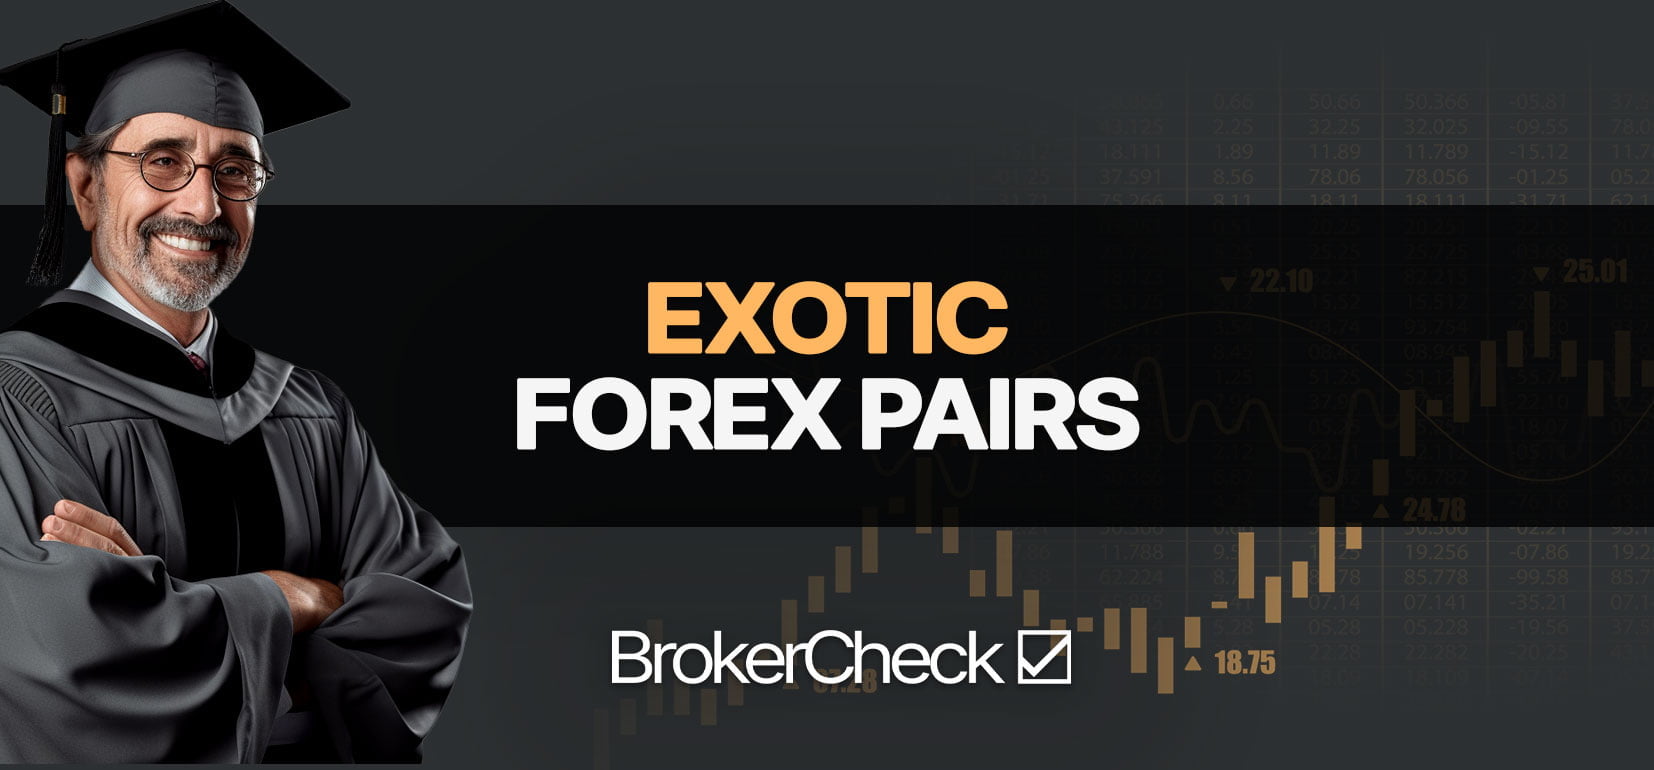 Exotique Forex Paires : exemples, stratégie, guide de trading